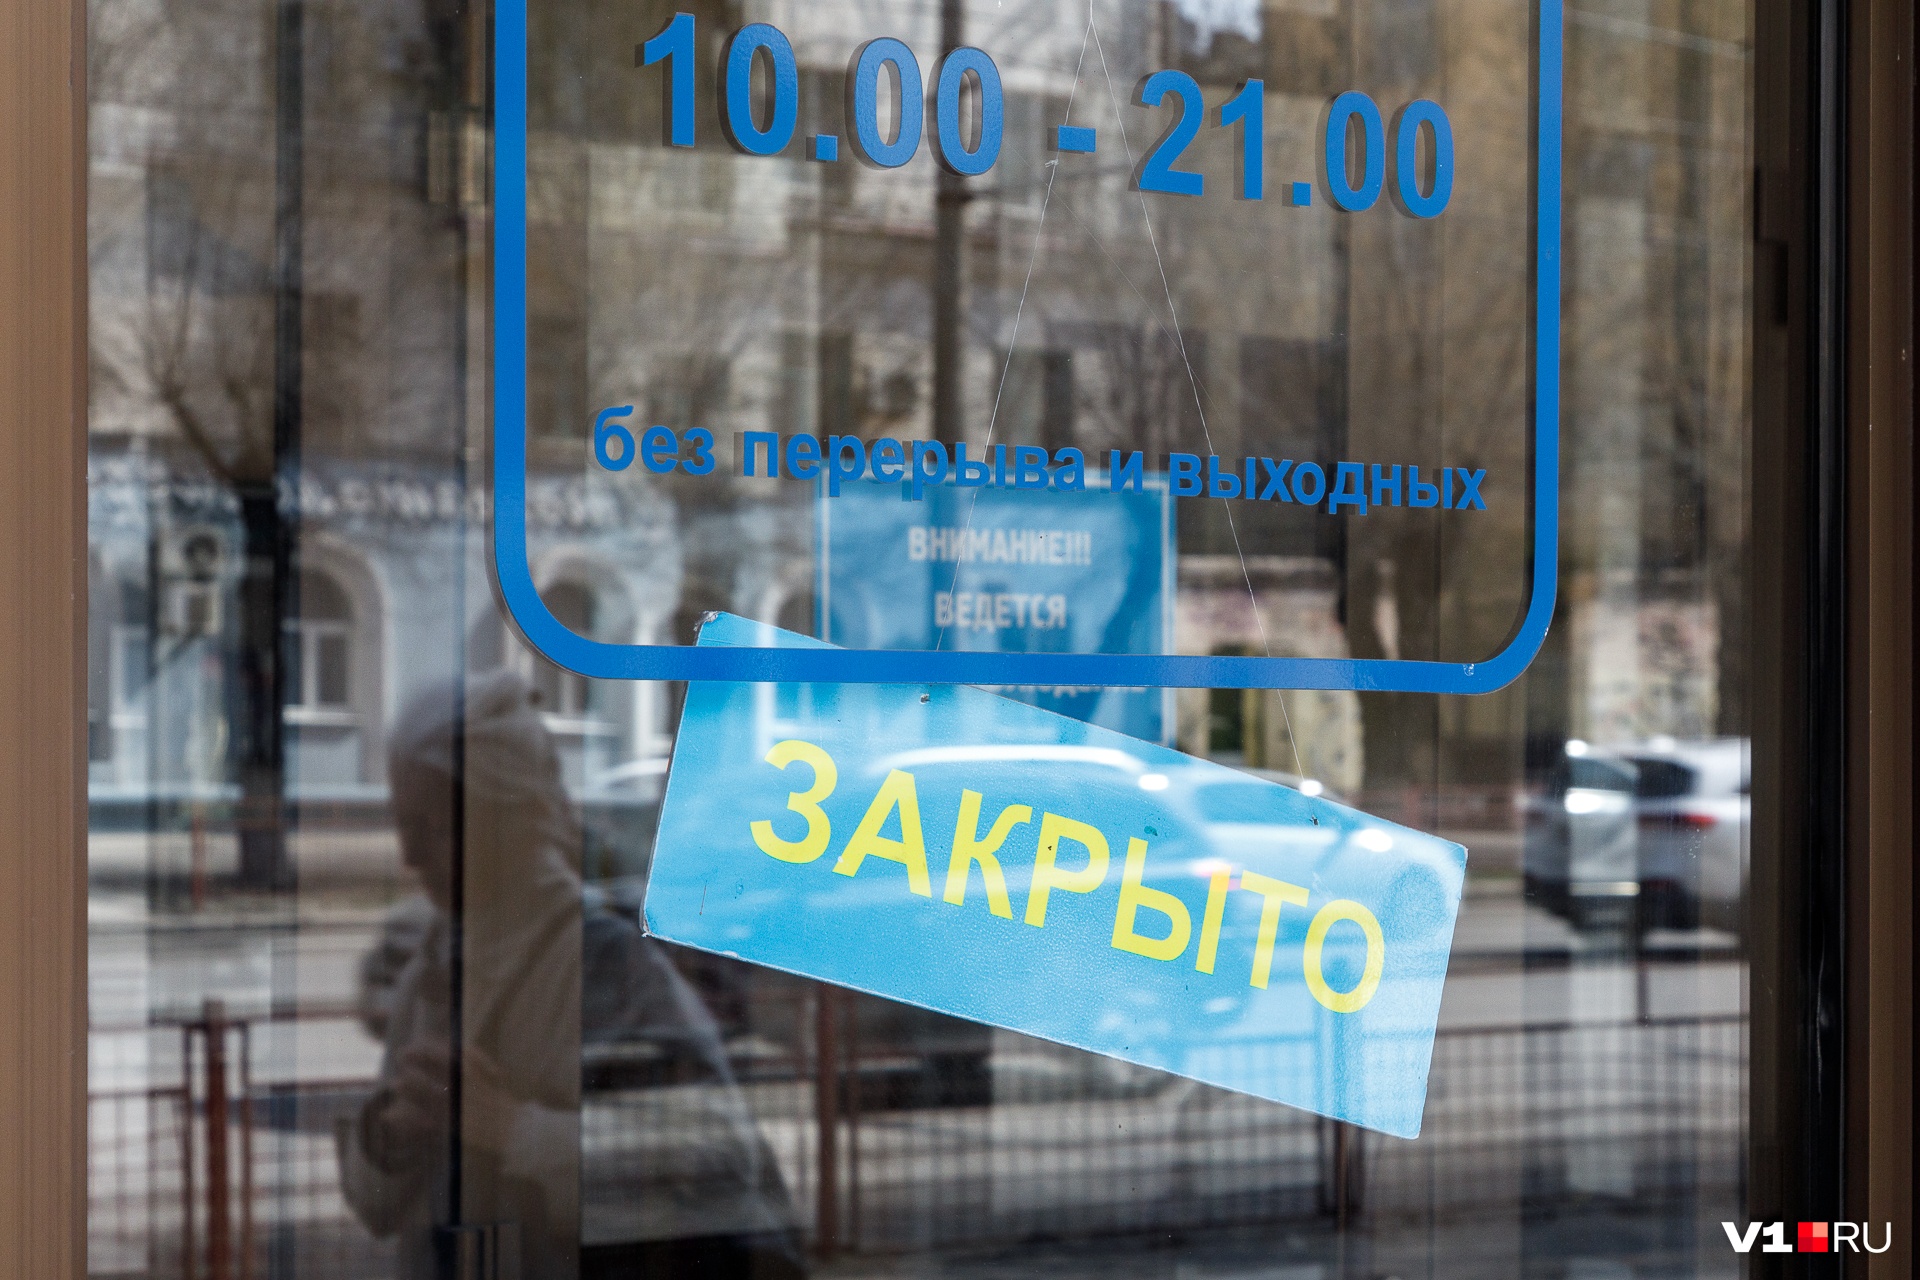 «Если захотят придраться, то придерутся»: в Урюпинске из-за нарушения коронавирусных правил закрыли магазин